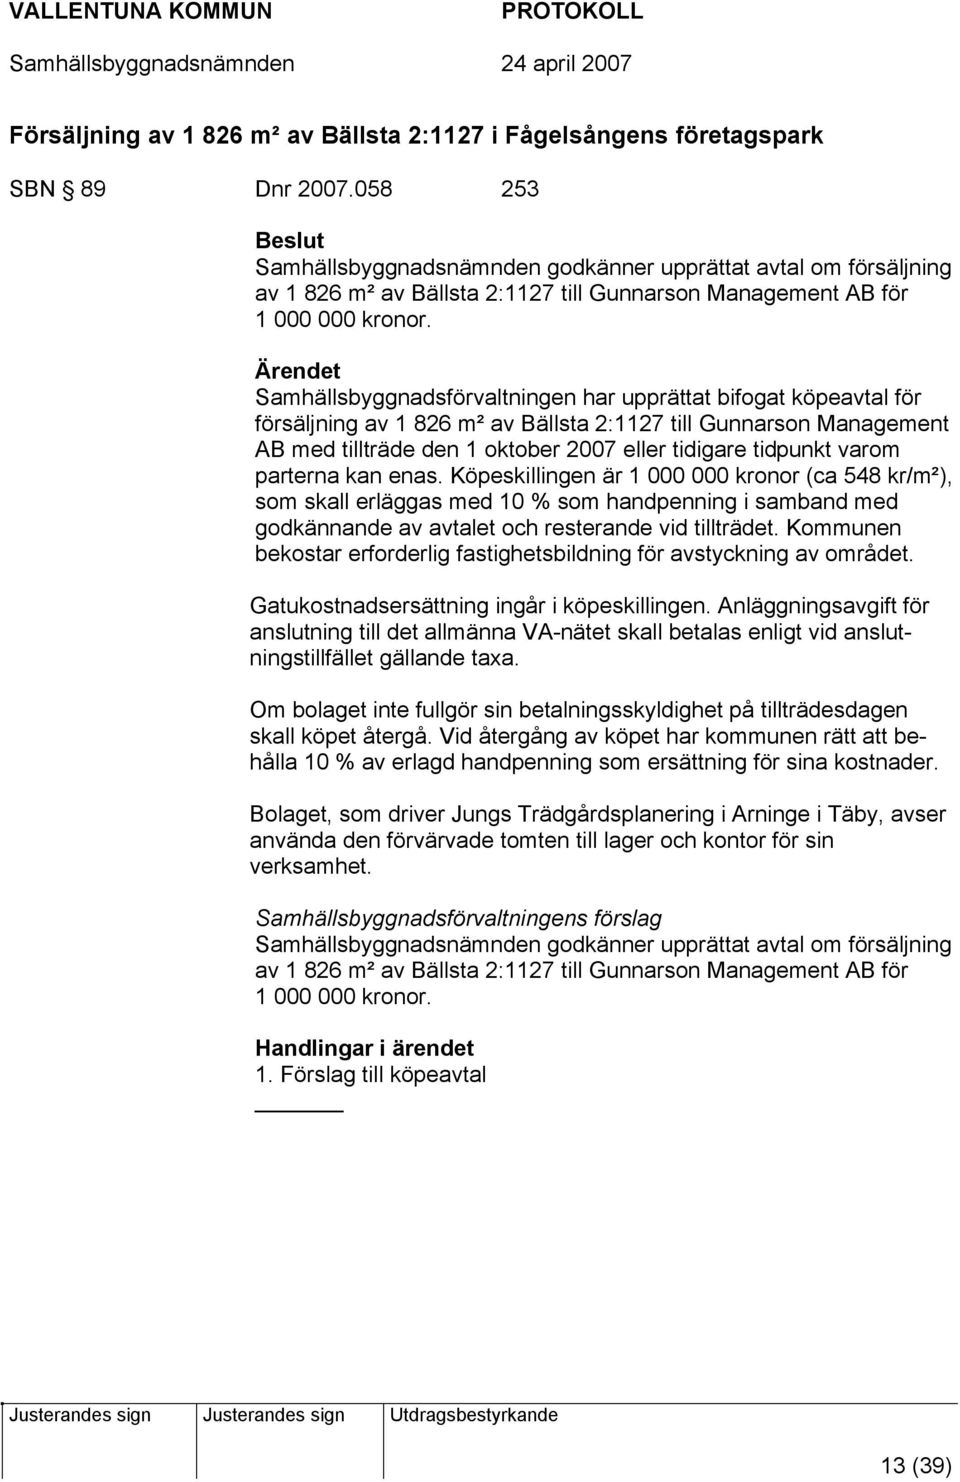 Samhällsbyggnadsförvaltningen har upprättat bifogat köpeavtal för försäljning av 1 826 m² av Bällsta 2:1127 till Gunnarson Management AB med tillträde den 1 oktober 2007 eller tidigare tidpunkt varom